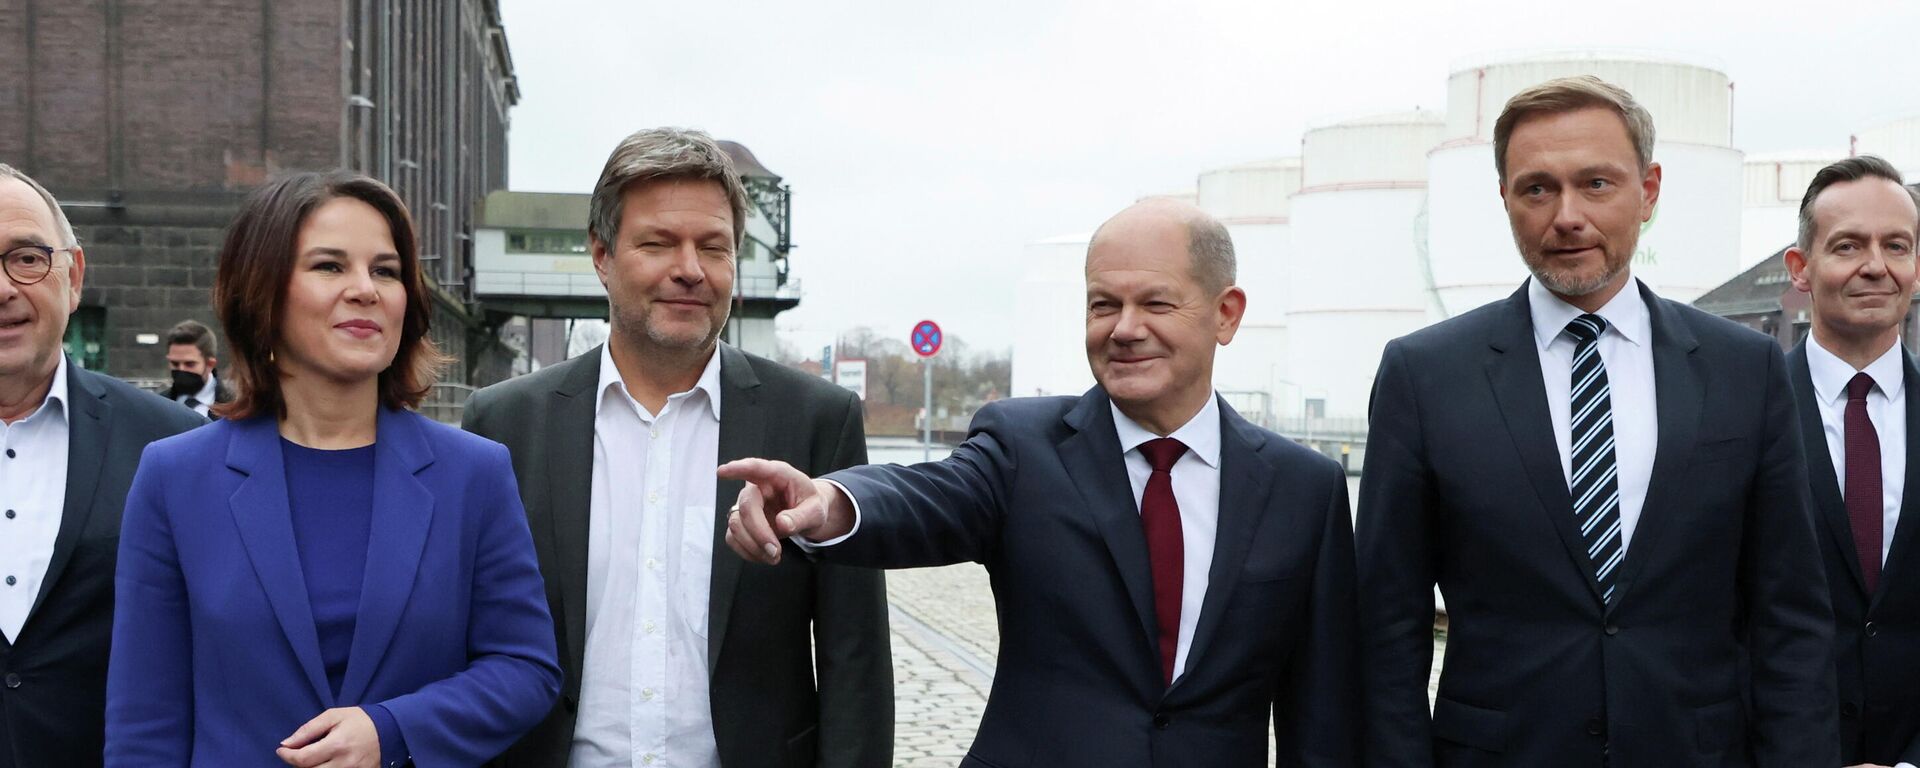 Almanya'da 'trafik lambası' koalisyon hükümeti anlaşması açıklandı: Müstakbel Başbakan SPD'li Olaf Scholz (sağdan üçüncü), Yeşiller Eşbaşkanları Robert Habeck ile Annalena Baerbock, FDP lideri Christian Lindner, SPD liderleri Norbert Walter-Borjans ile Saskia Esken'le birlikte basın toplantısı düzenledi. - Sputnik Türkiye, 1920, 03.04.2022